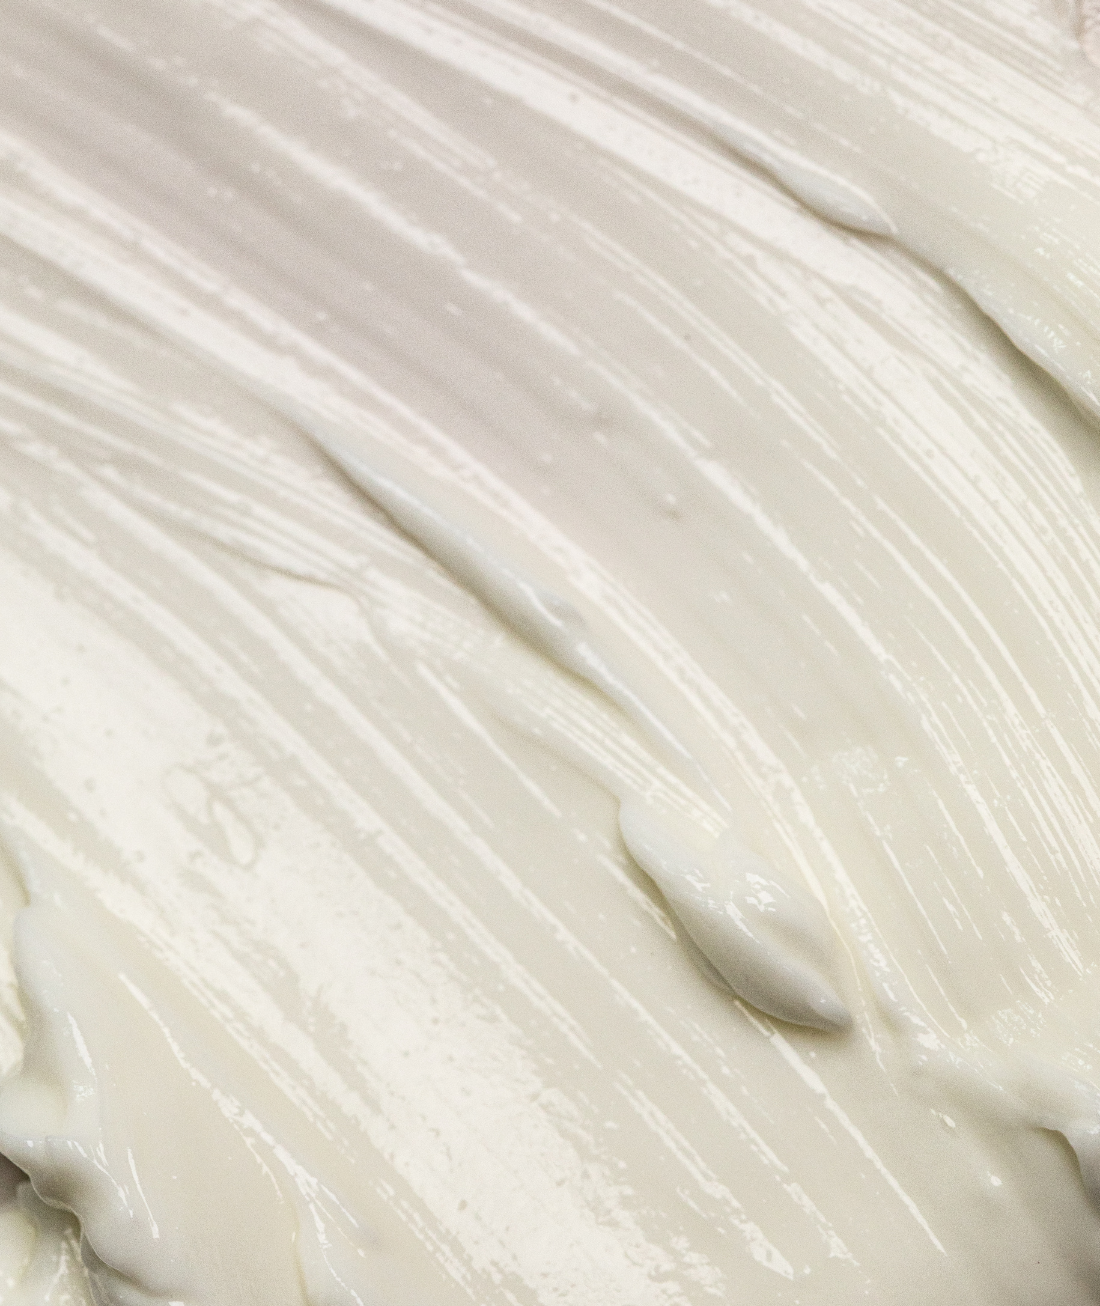 Hydra-Calm Cream Cleanser